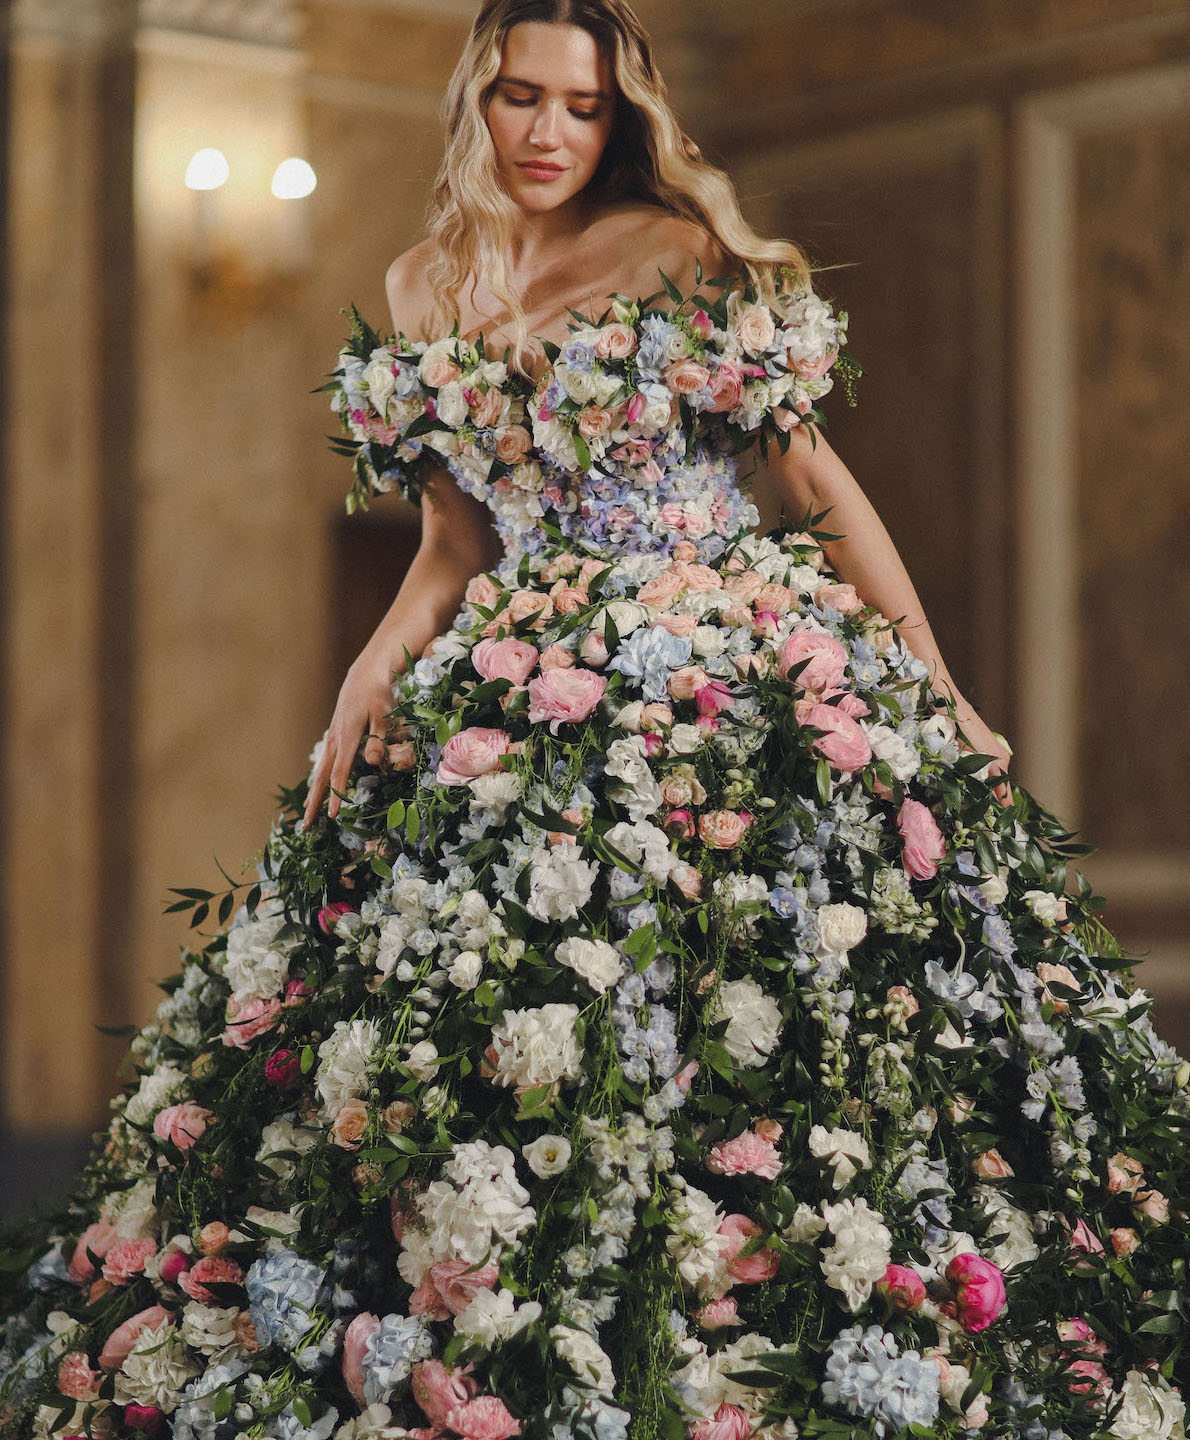 Природа в моде: Vladiyan Royal удивил мир уникальным свадебным платьем из живых цветов. 